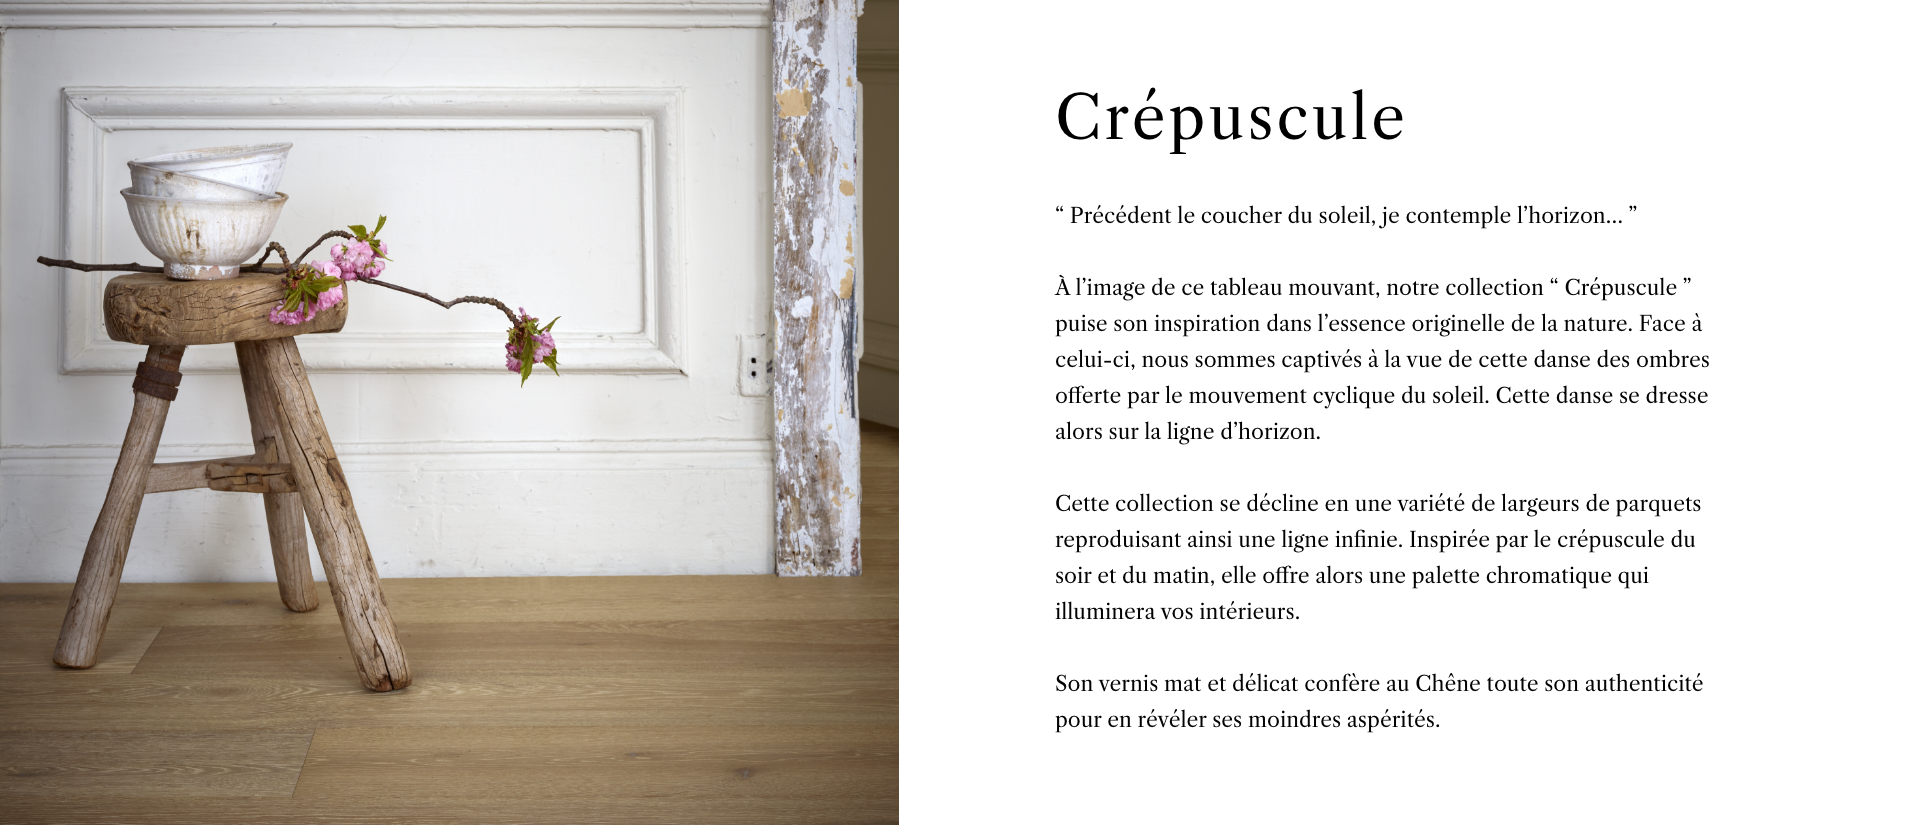 Collection Crepuscule - Description